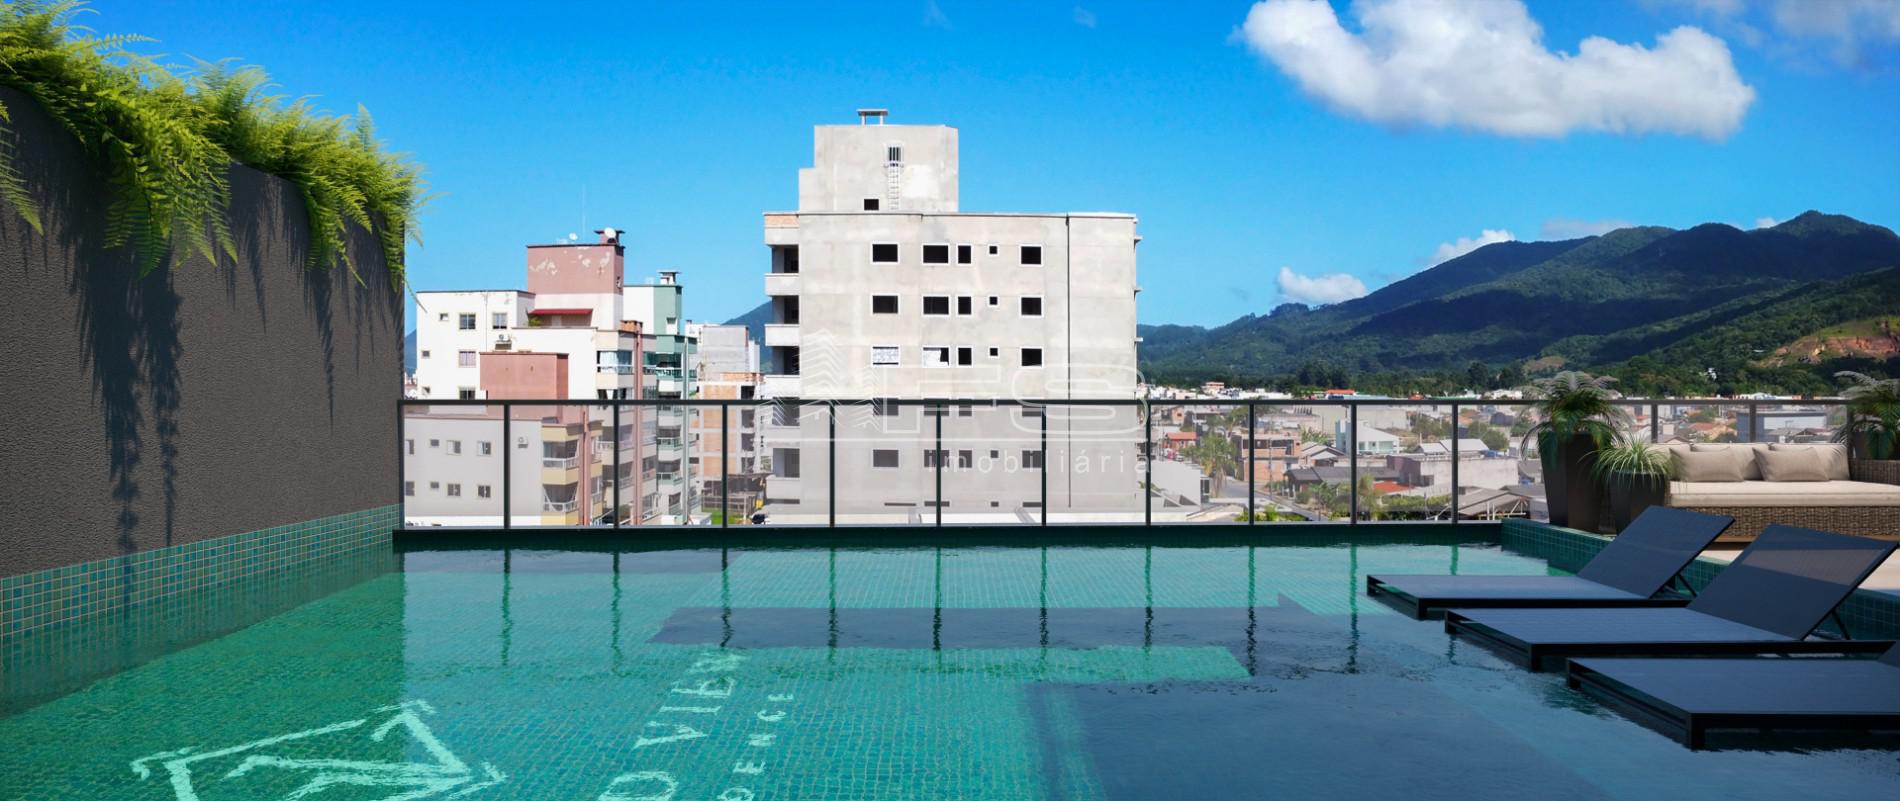 Apartamento com 3 Dormitórios à venda, 70 m² por R$ 678.224,00